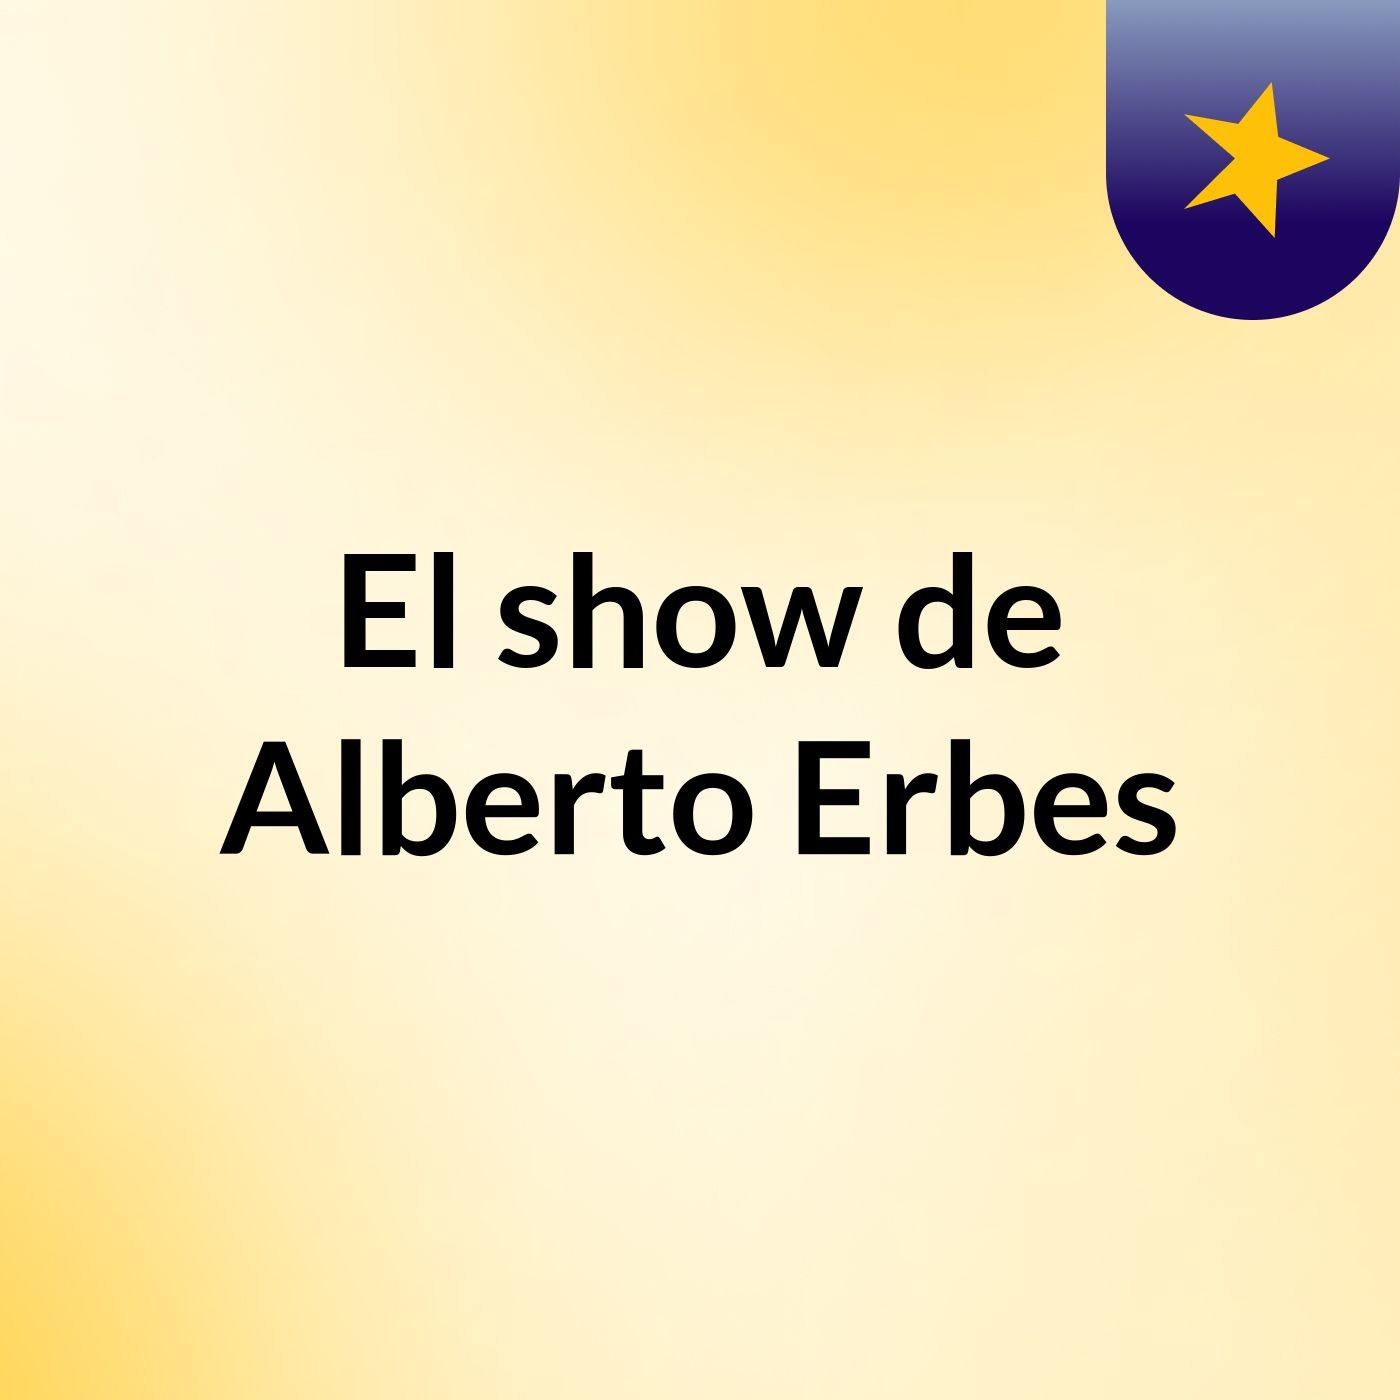 El show de Alberto Erbes